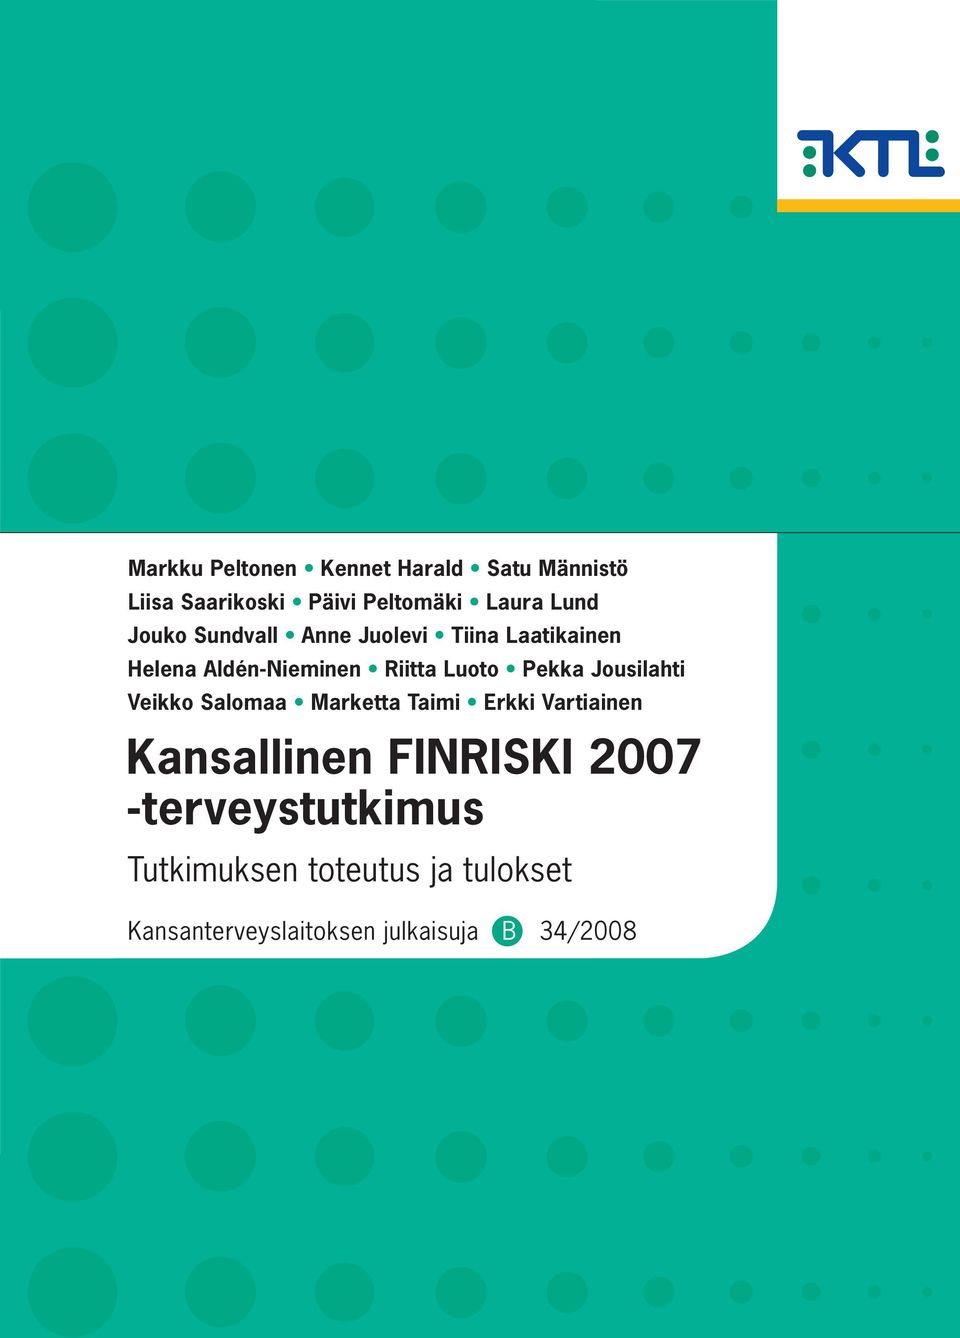 Jousilahti Veikko Salomaa Marketta Taimi Erkki Vartiainen Kansallinen FINRISKI 2007